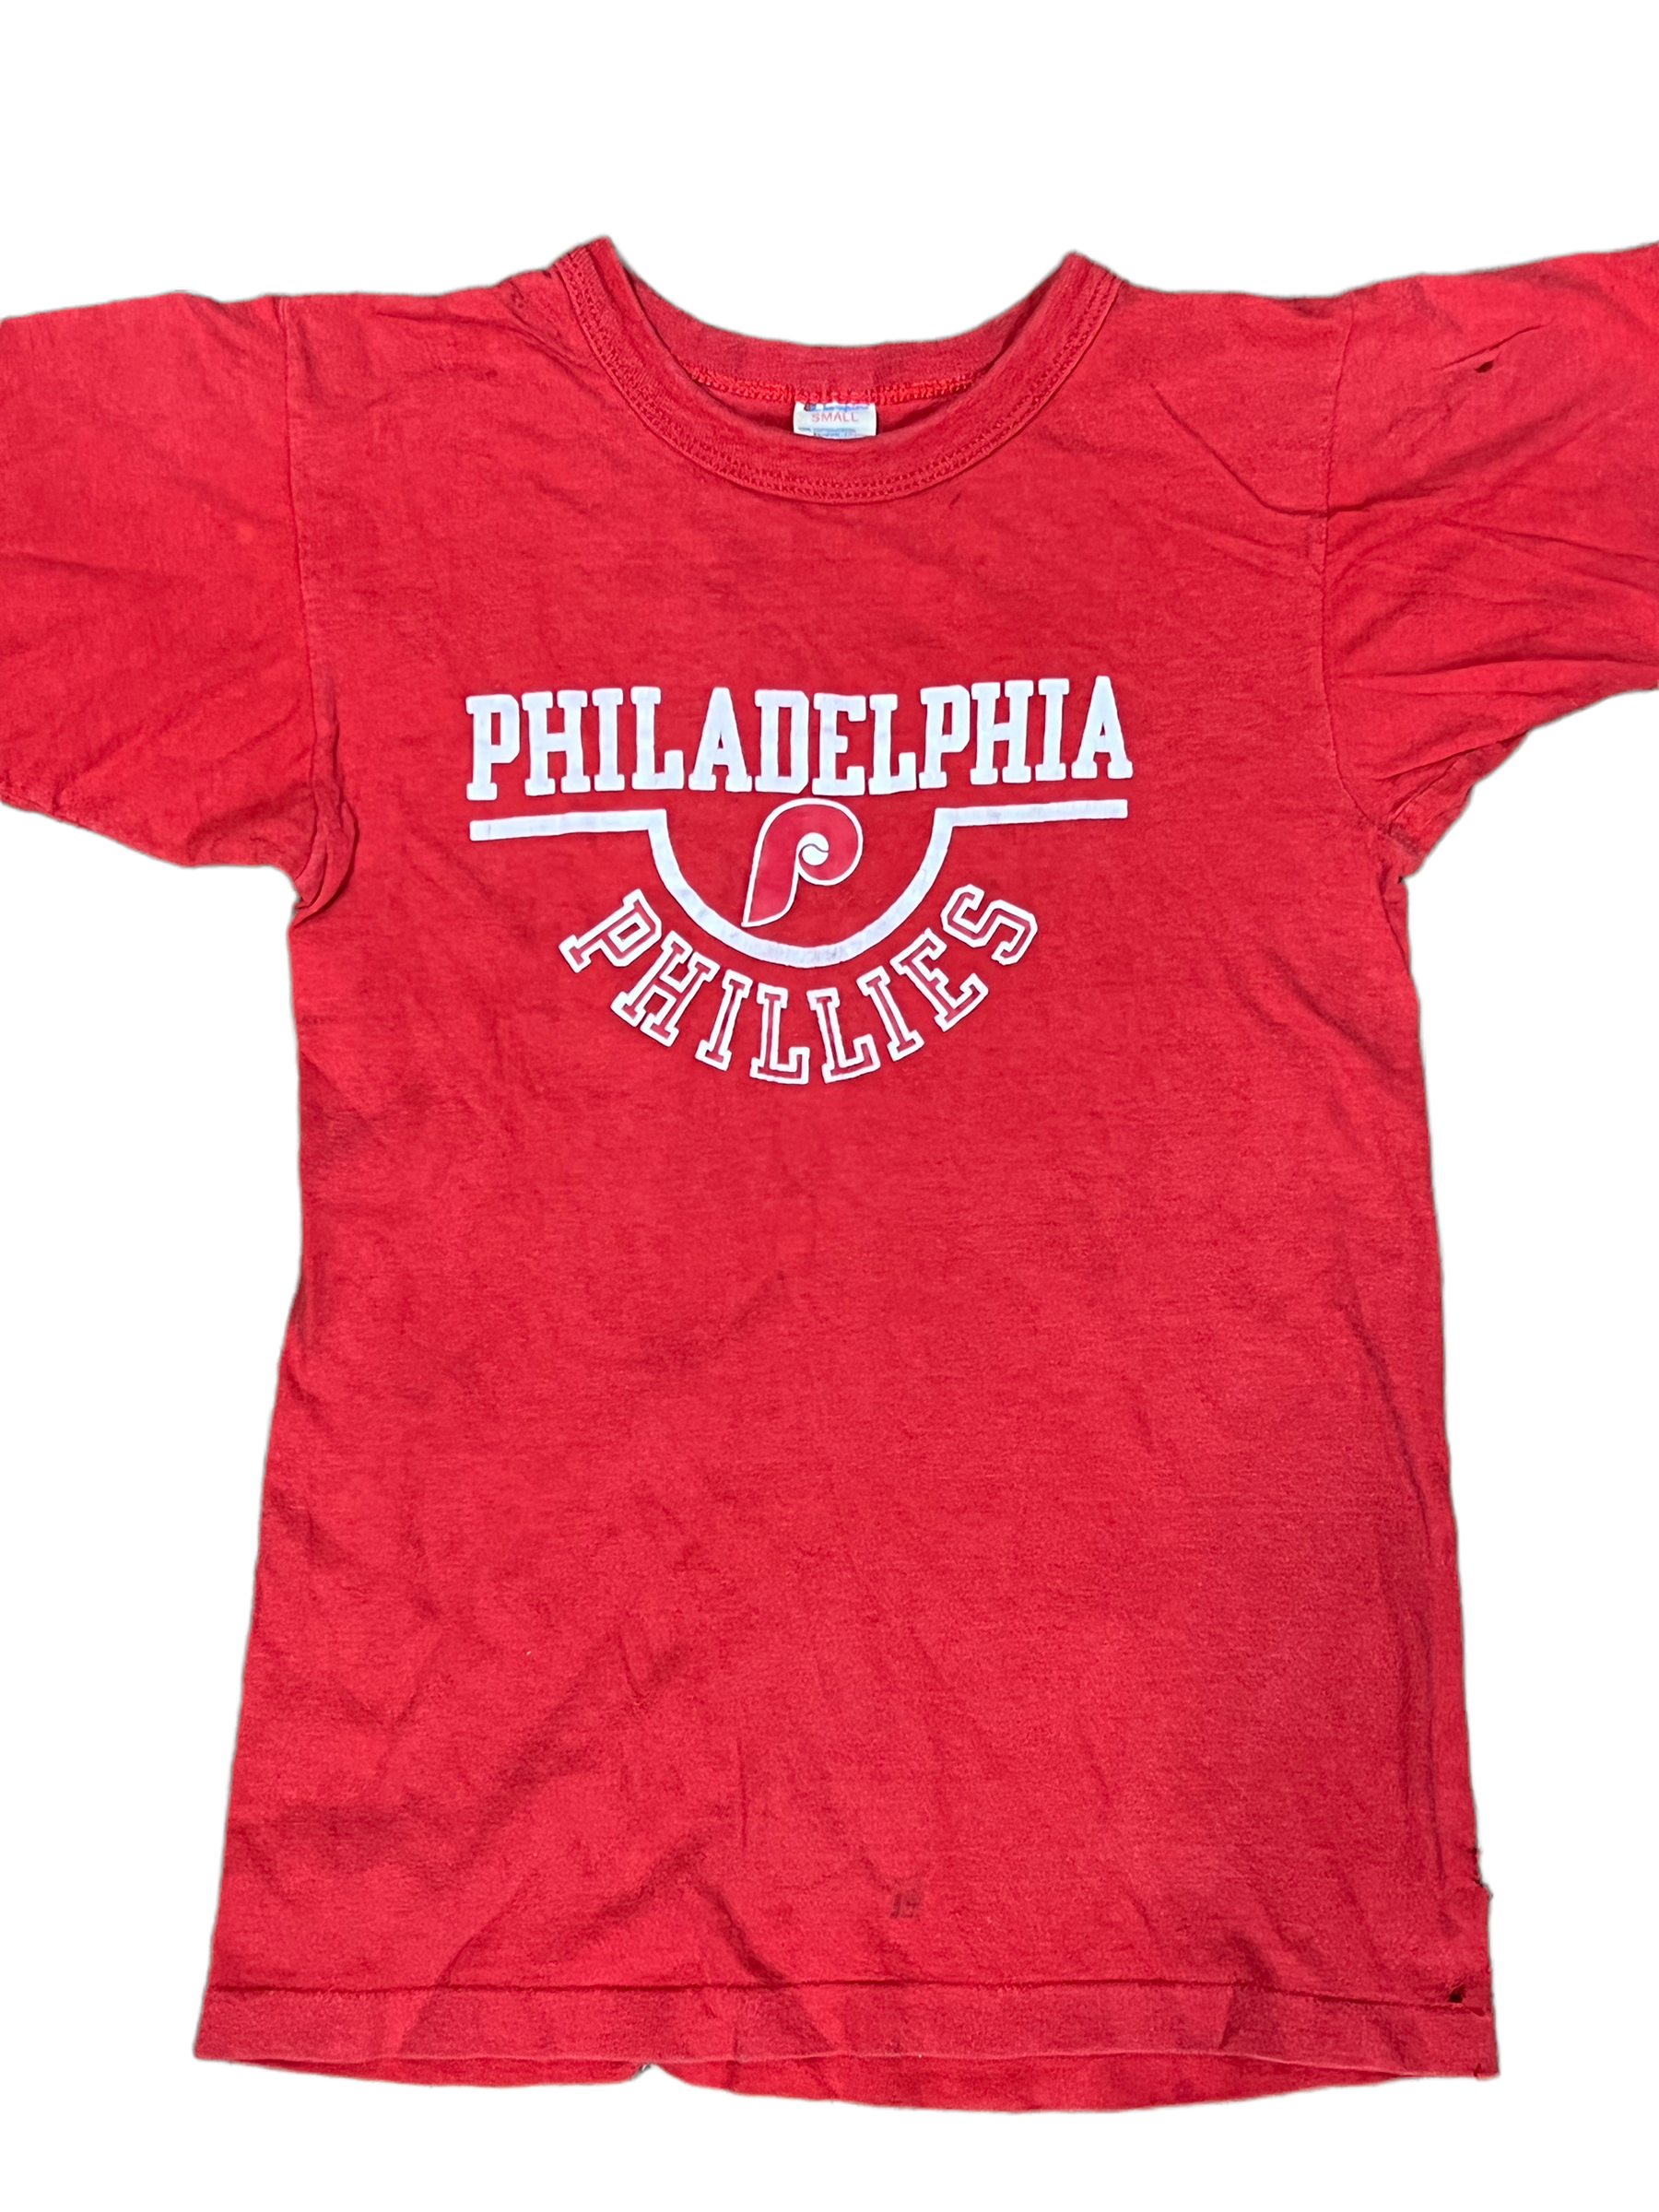 Vintage Phillies Crewneck Sweatshirt Philadelphia Phil-lies